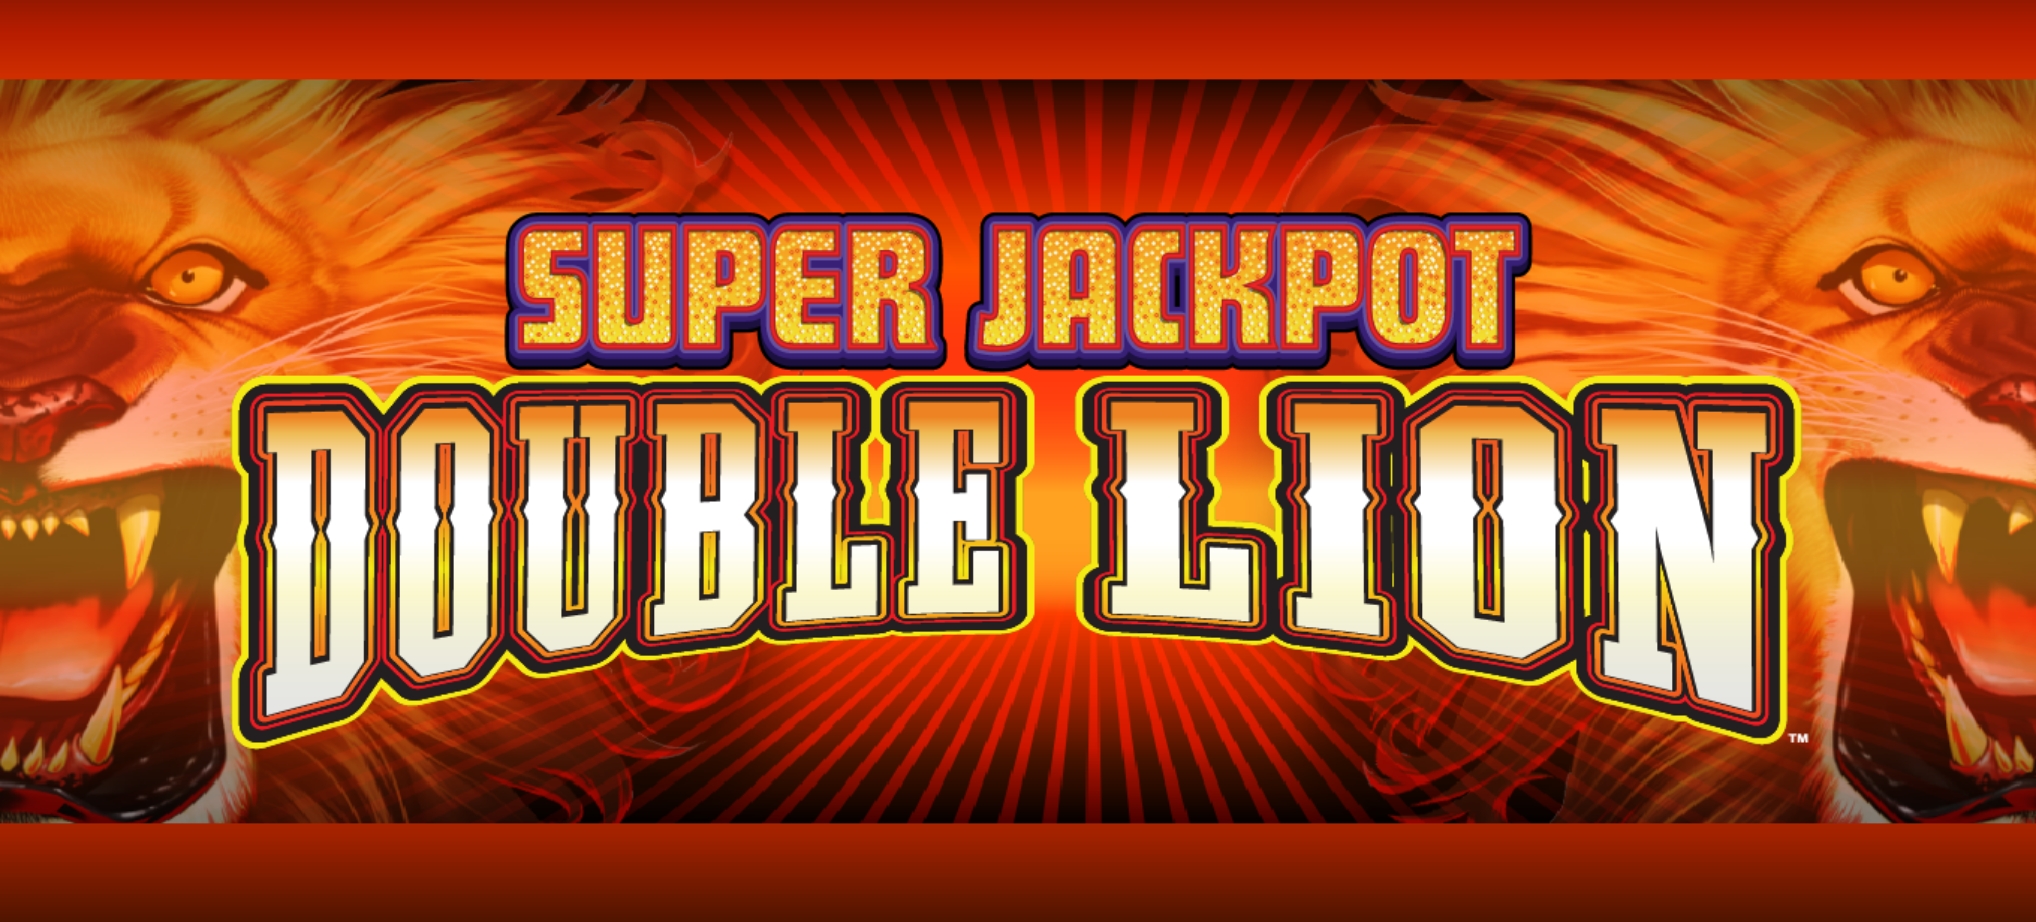 Super Jackpot Double Lion Game